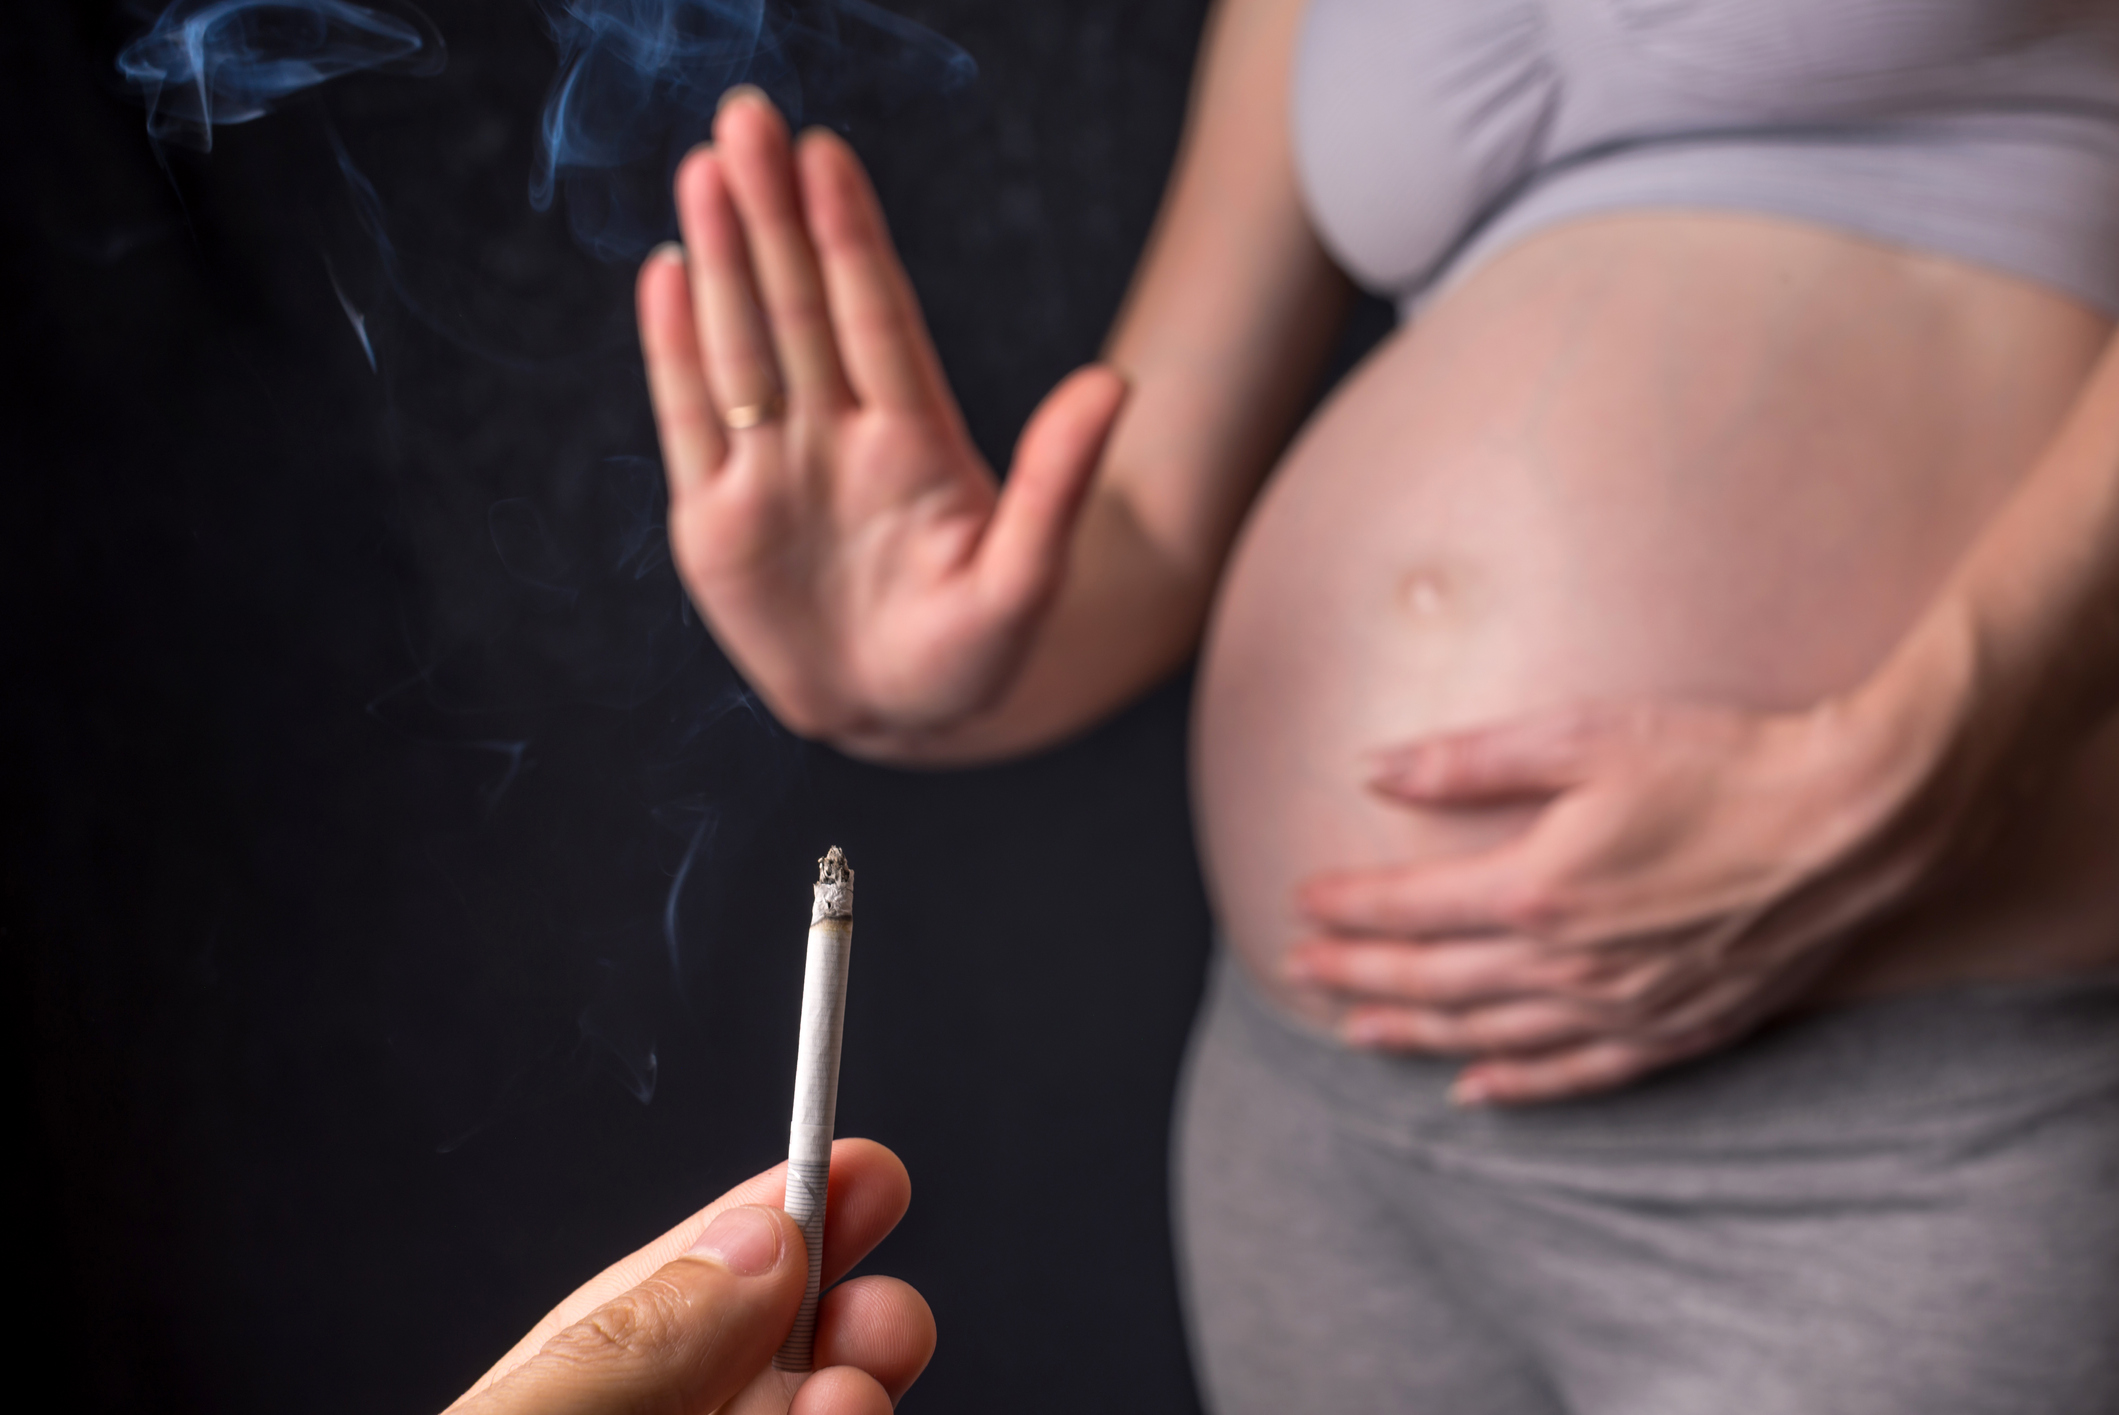 maternal smoking